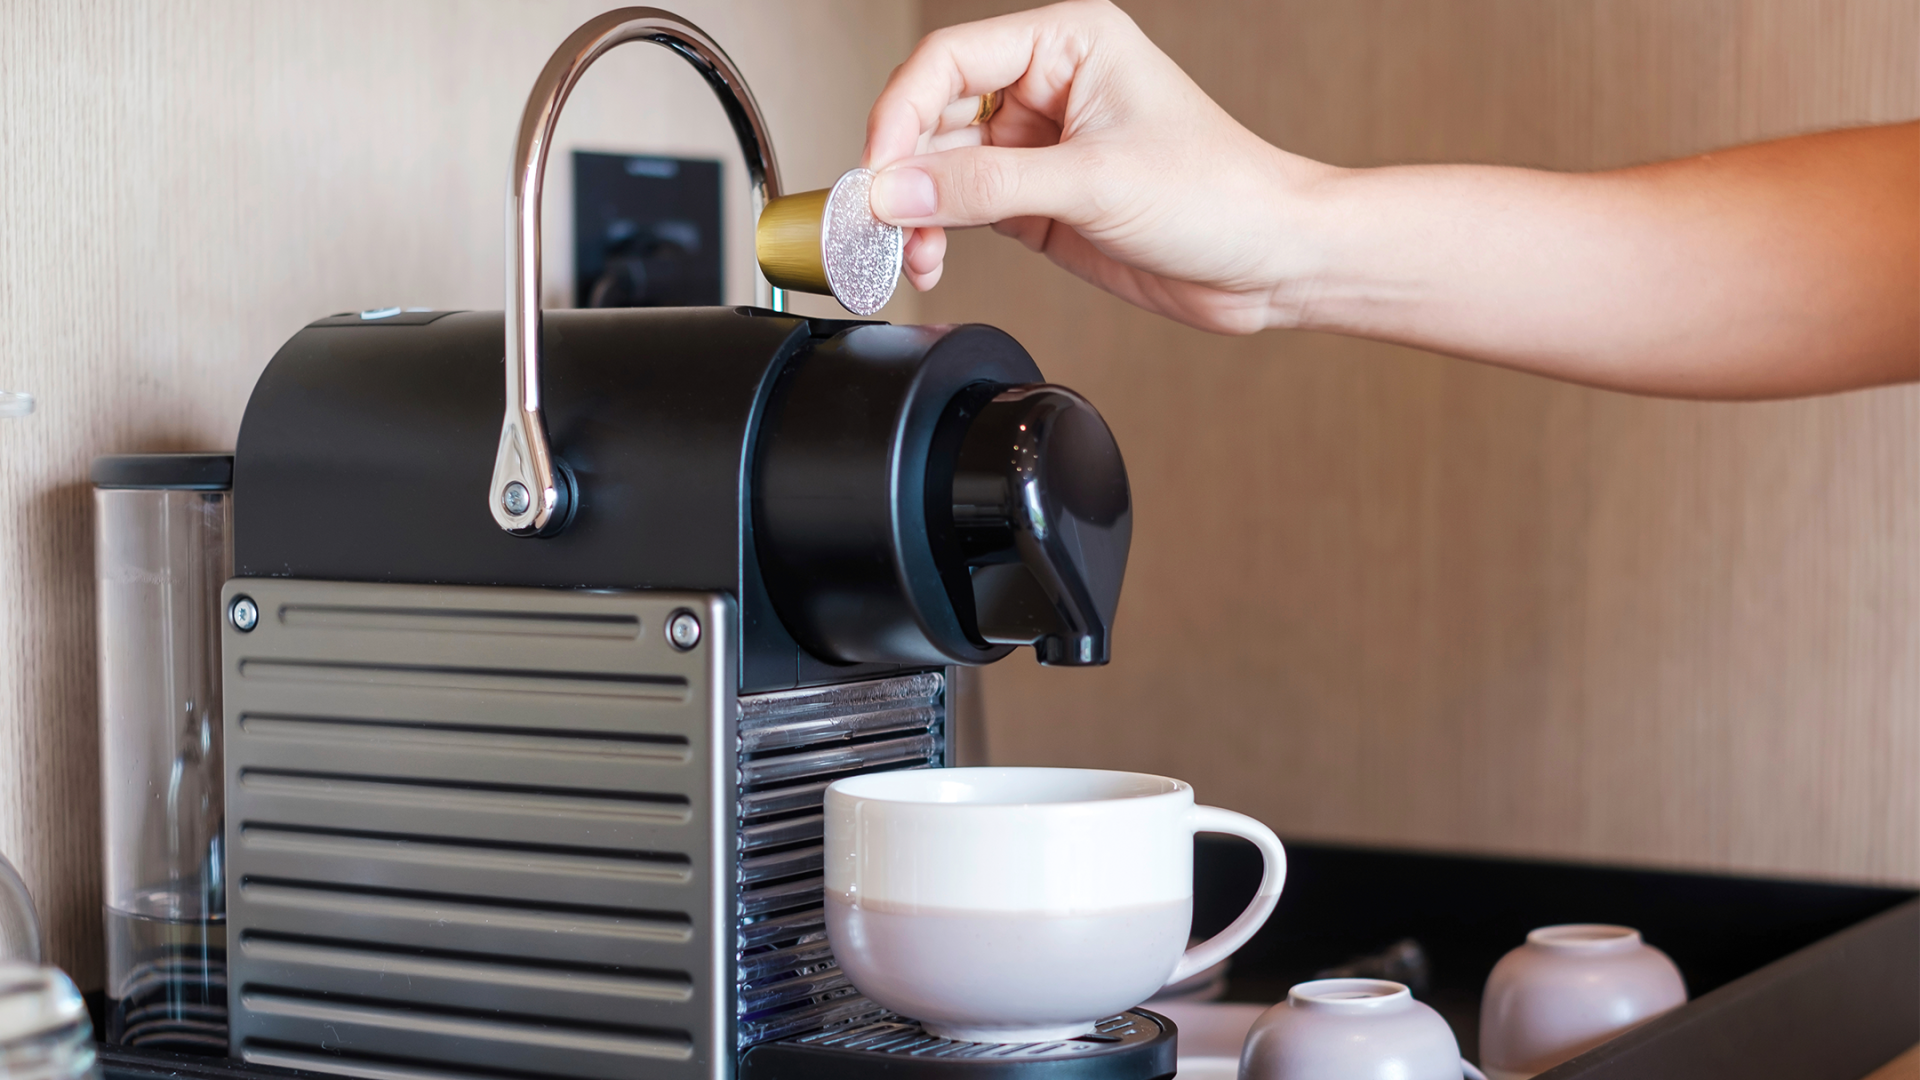 Une main introduit une capsule de café dans une machine à café